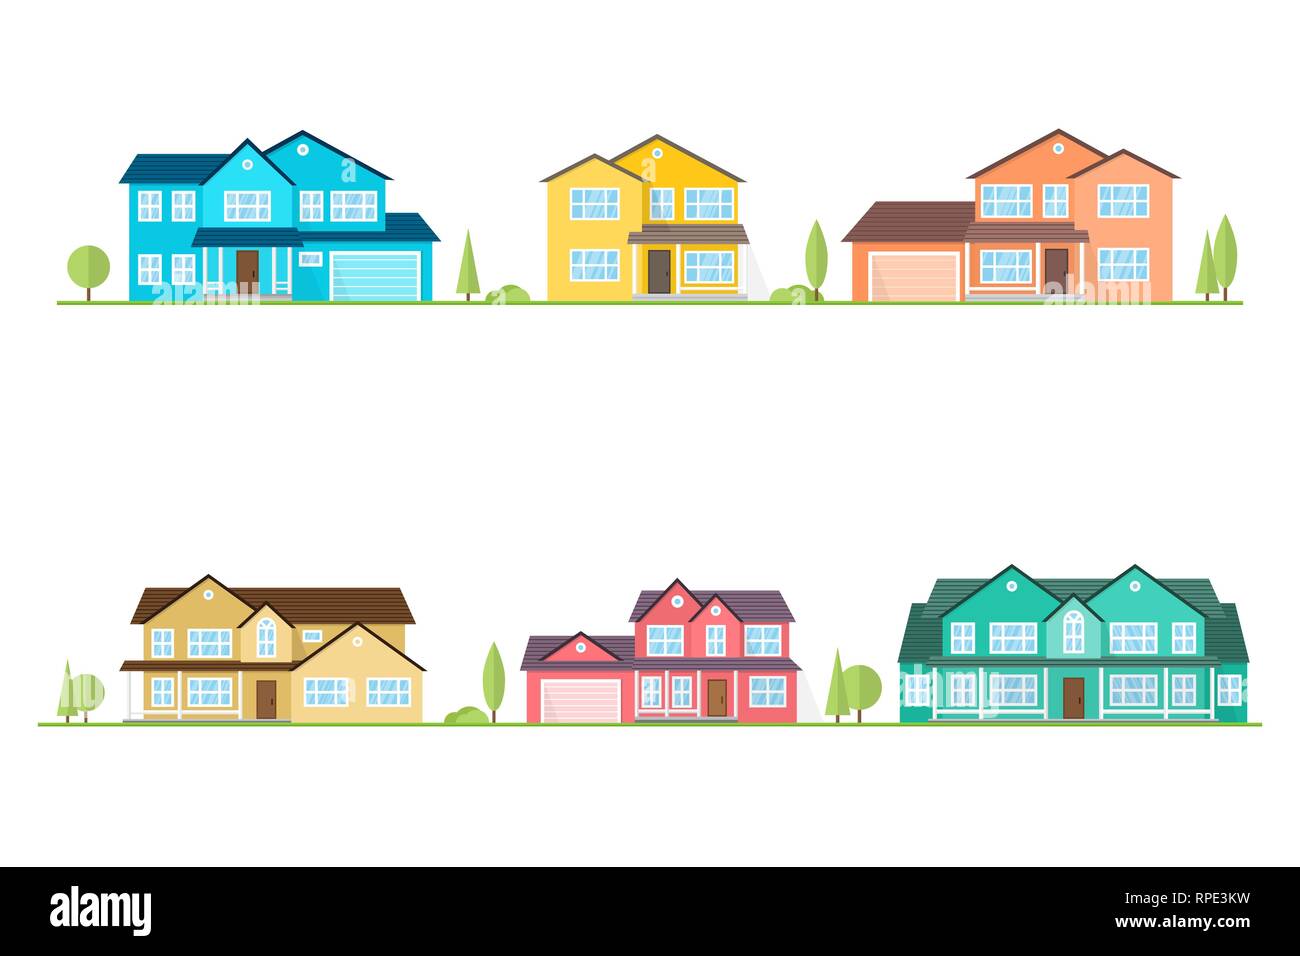 Nachbarschaft mit Wohnungen illustriert auf Weiß. Vektor flachbild Symbol suburban amerikanische Häuser. Für web design und Application Interface, auch nützlich für Infografiken. Vector Illustration. Stock Vektor